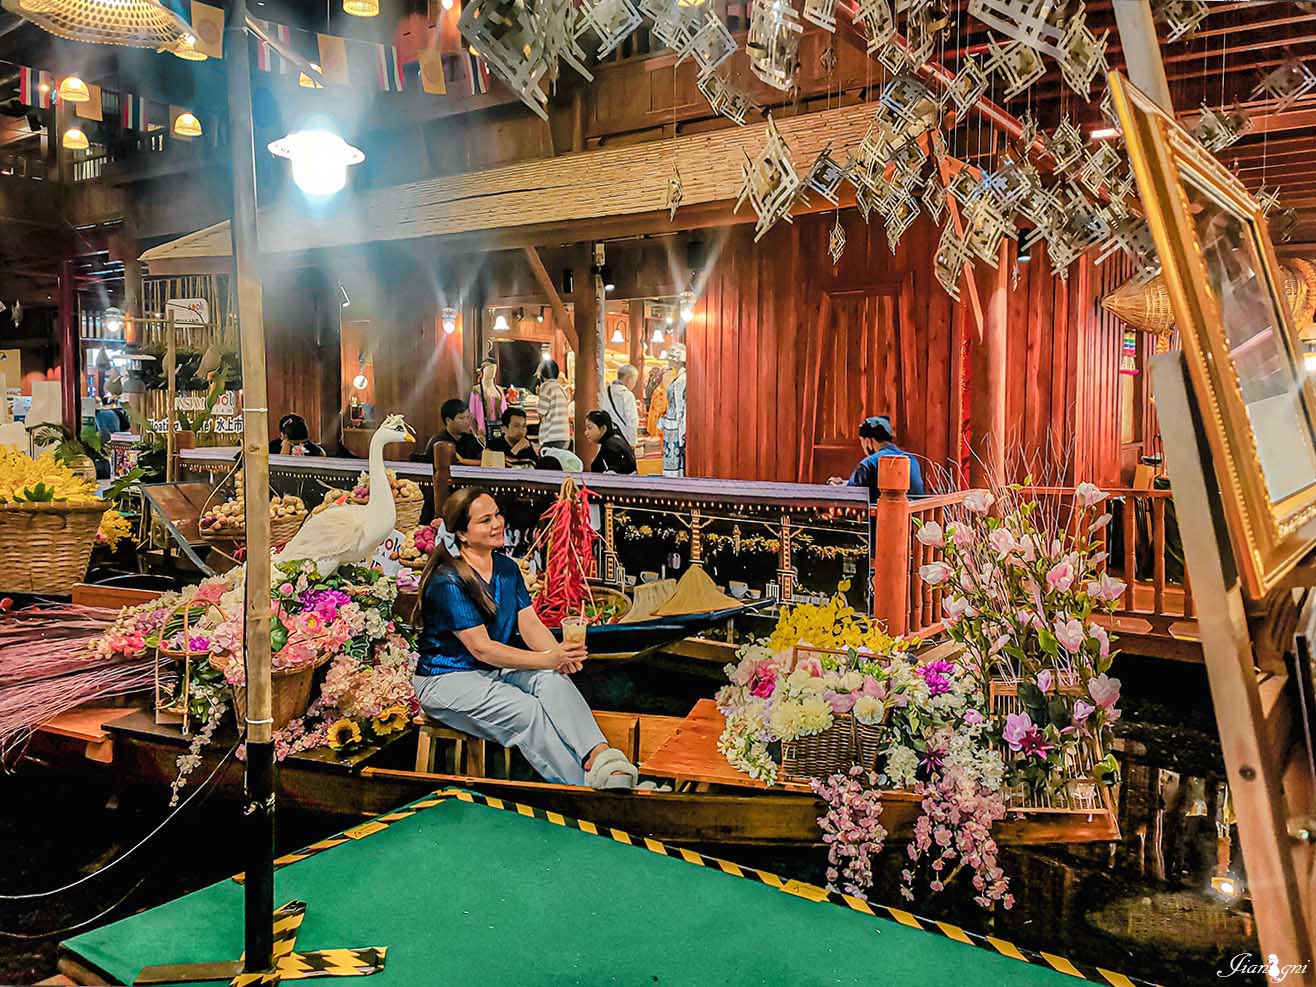 曼谷自助旅行懶人包 住宿 美食 網美泰服體驗 人氣高空酒吧 老景點新玩法 @蔣妮の冰斗人生